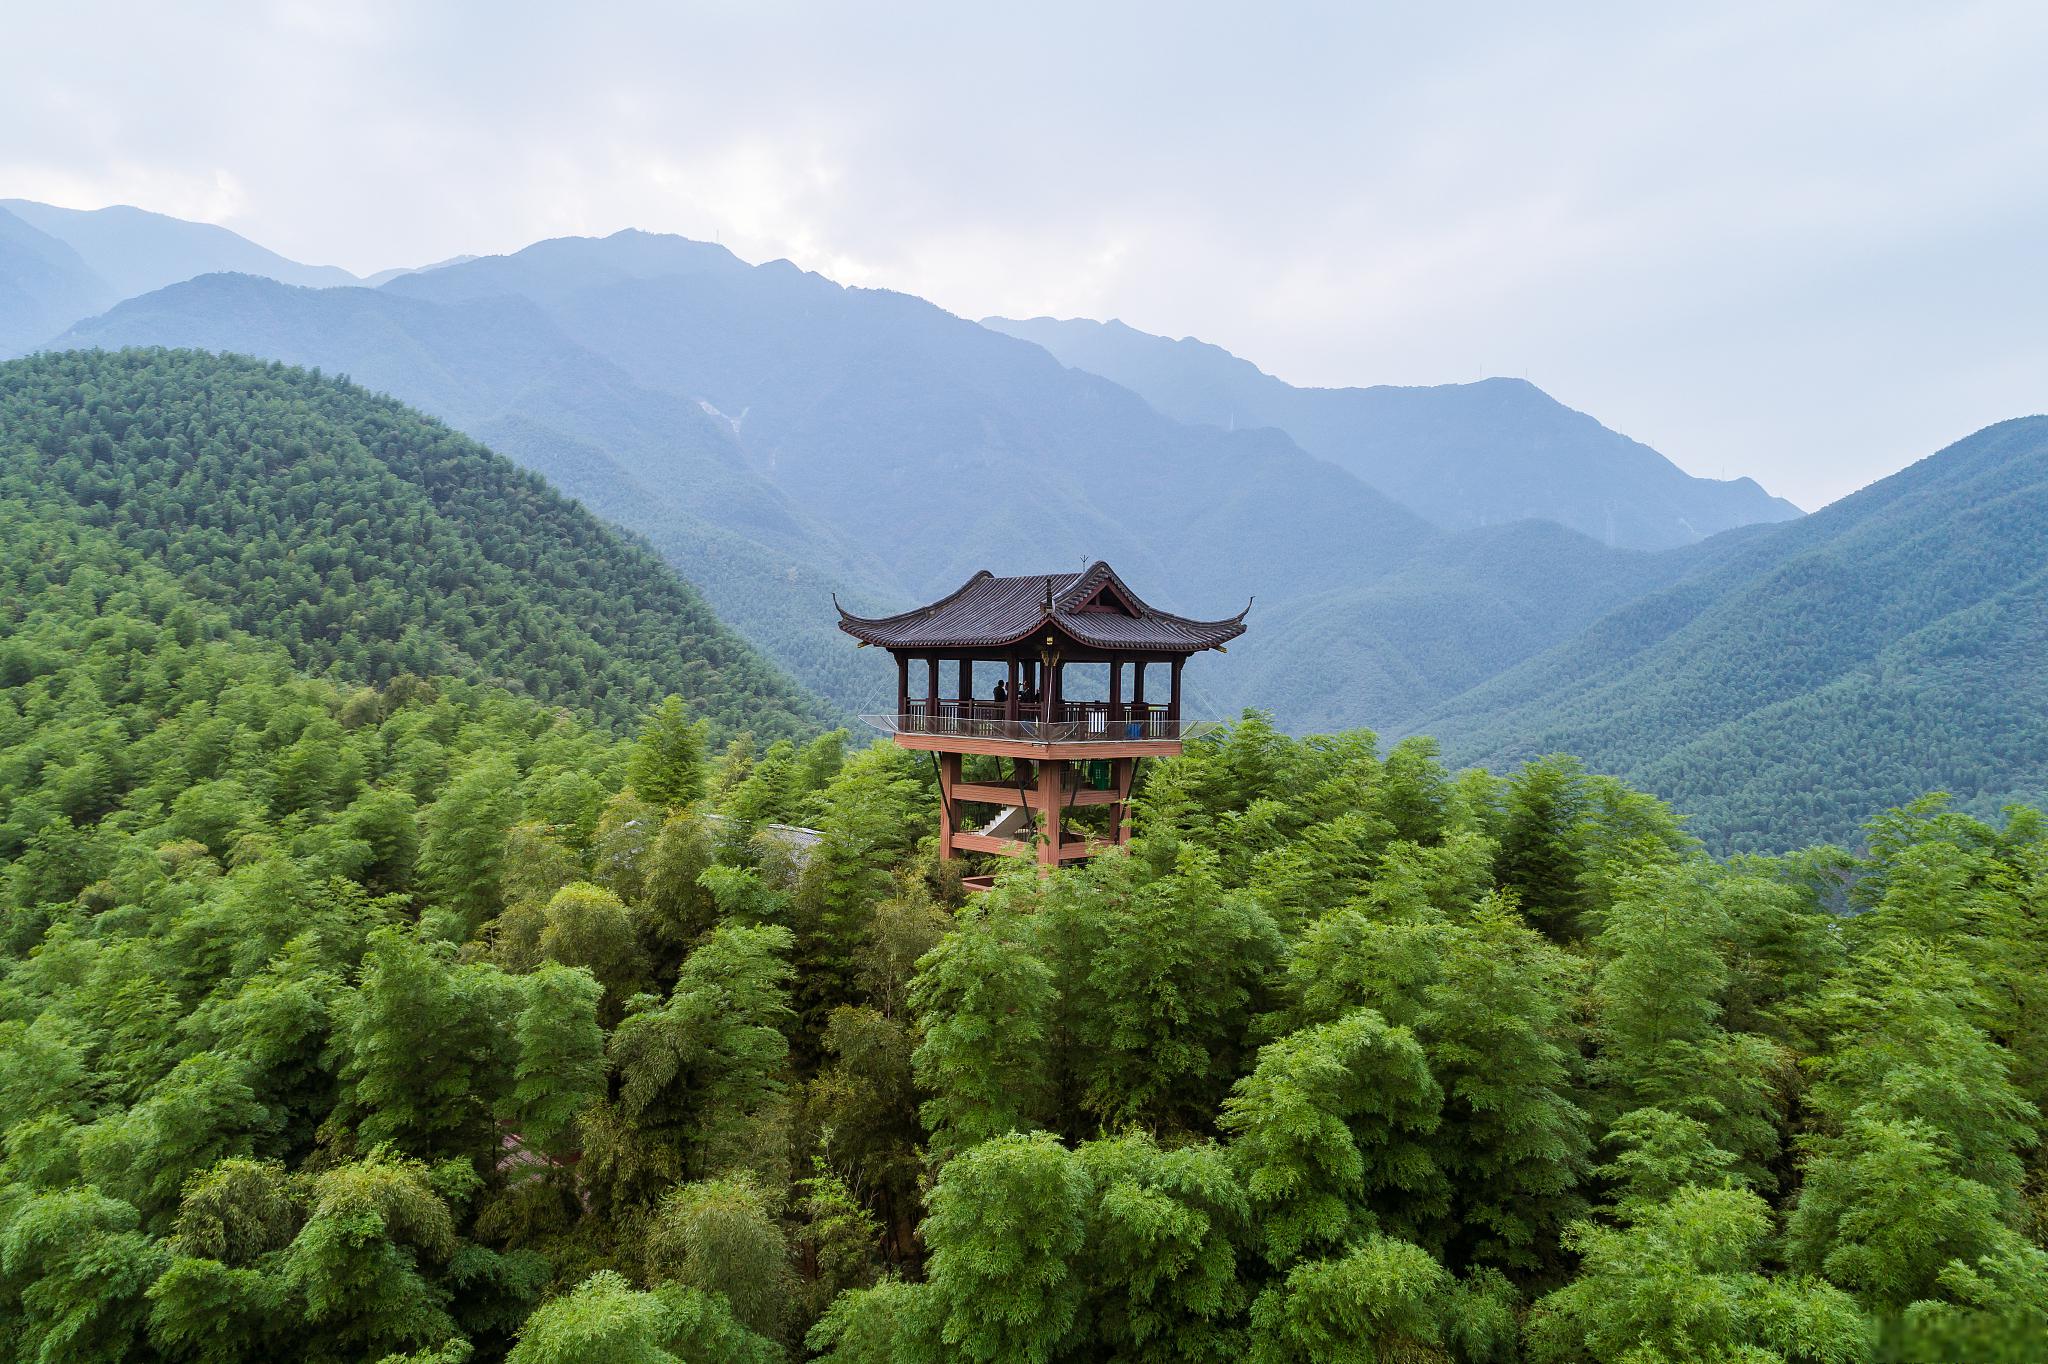 莫干山旅游攻略 莫干山是中国著名的旅游胜地,位于浙江省德清县境内